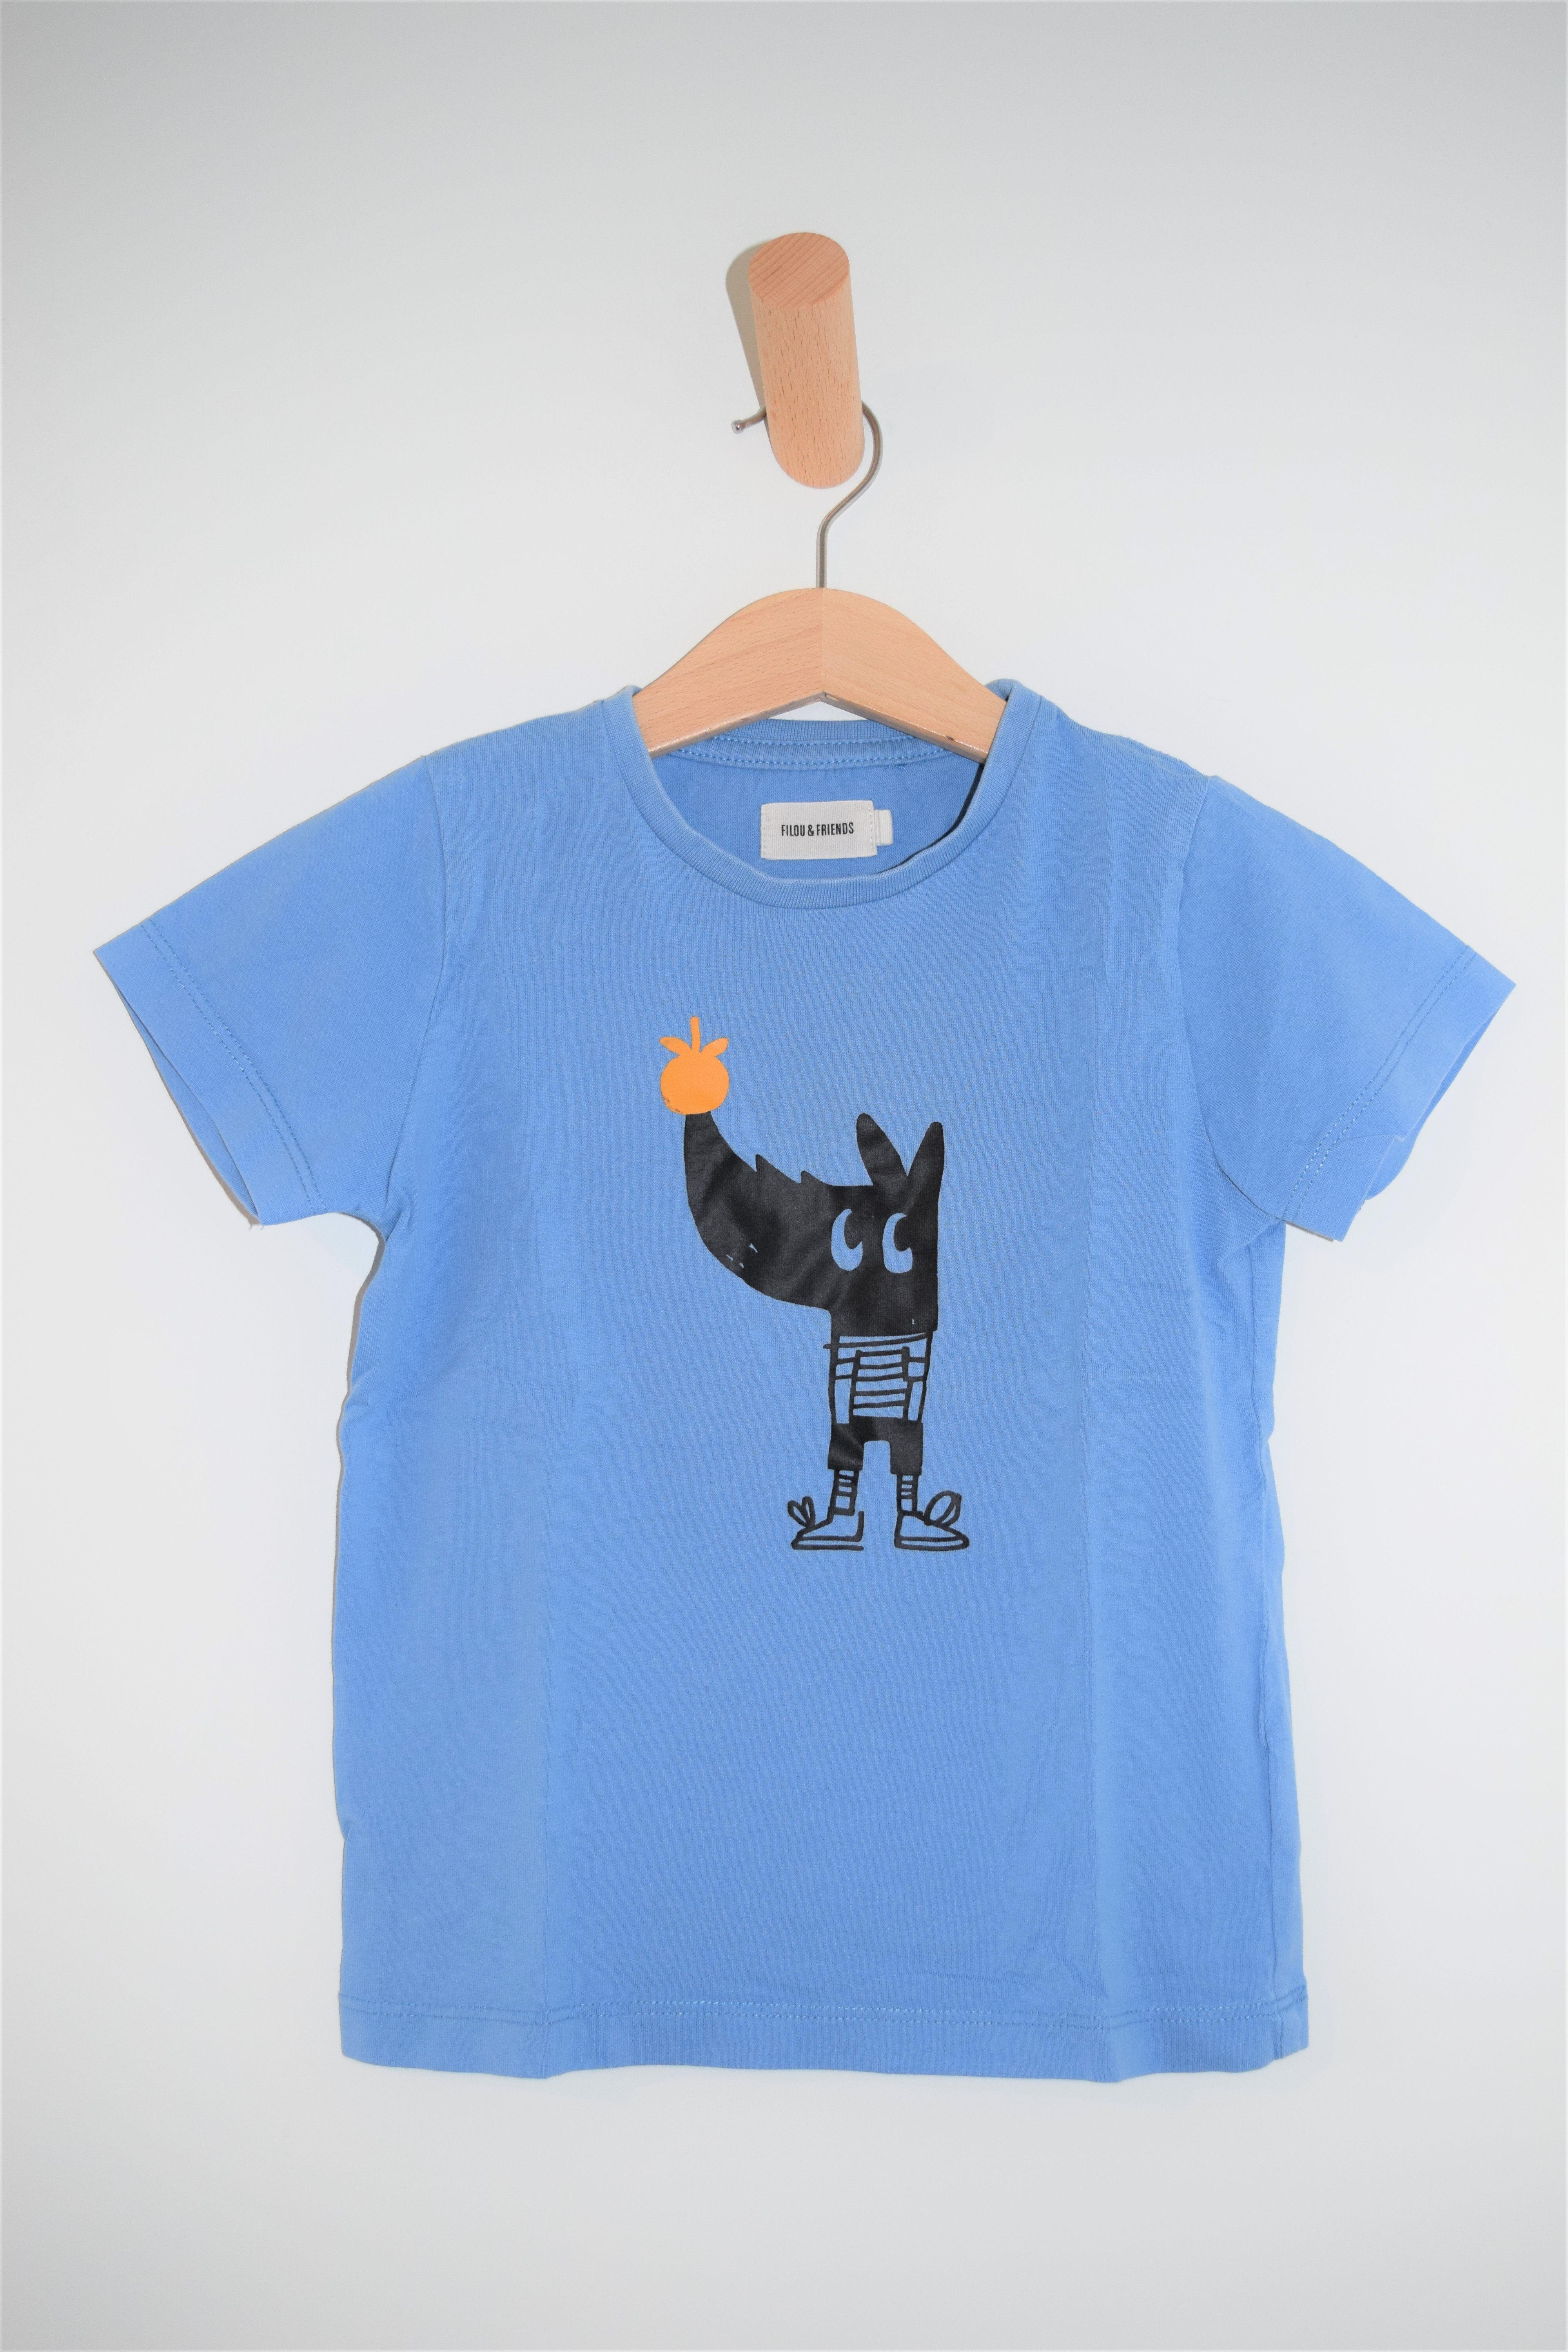 T-shirt, Filou & Friends, 5 jaar 